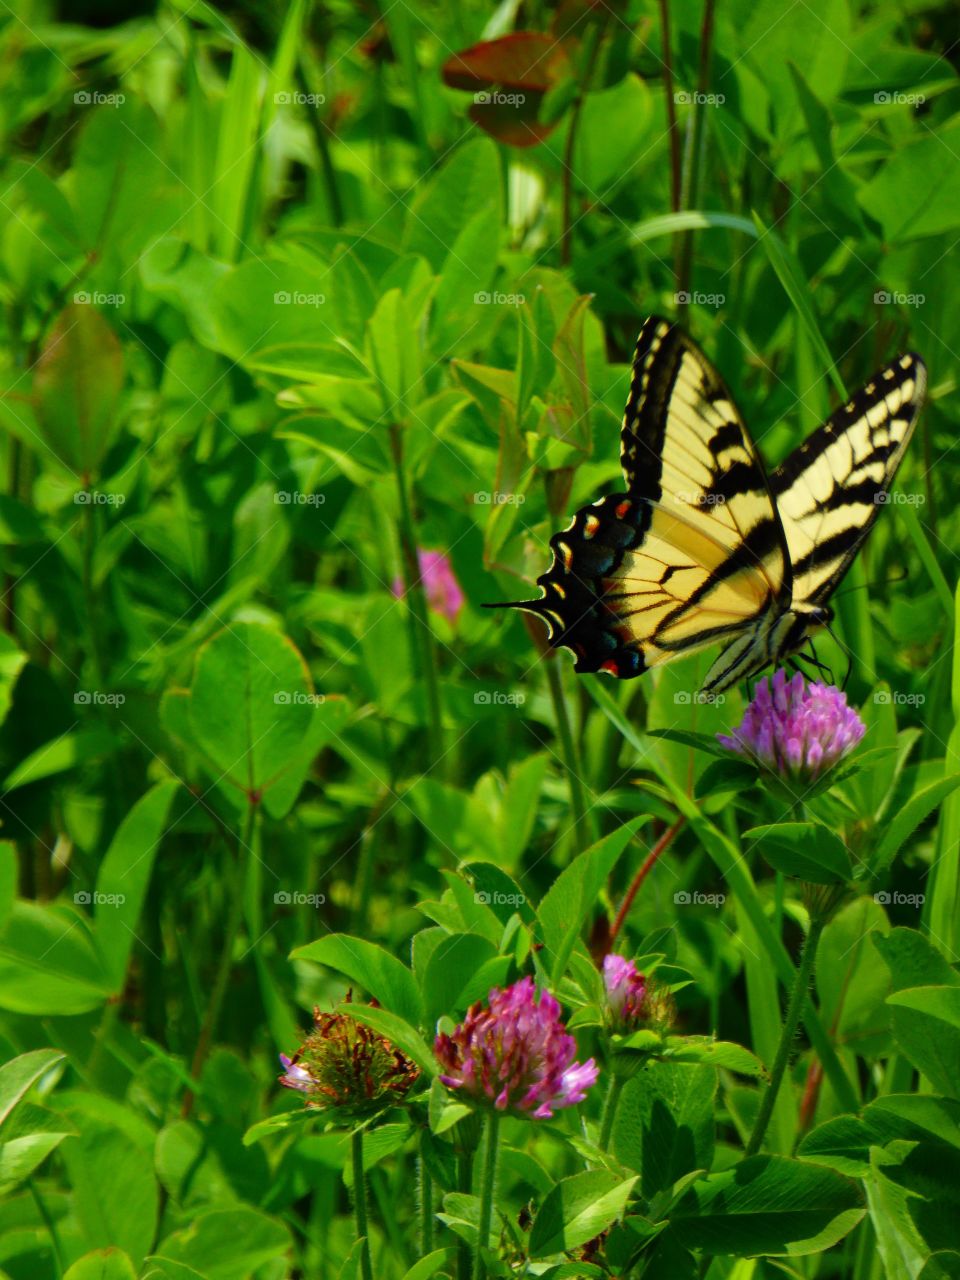 Butterfly in a field 6